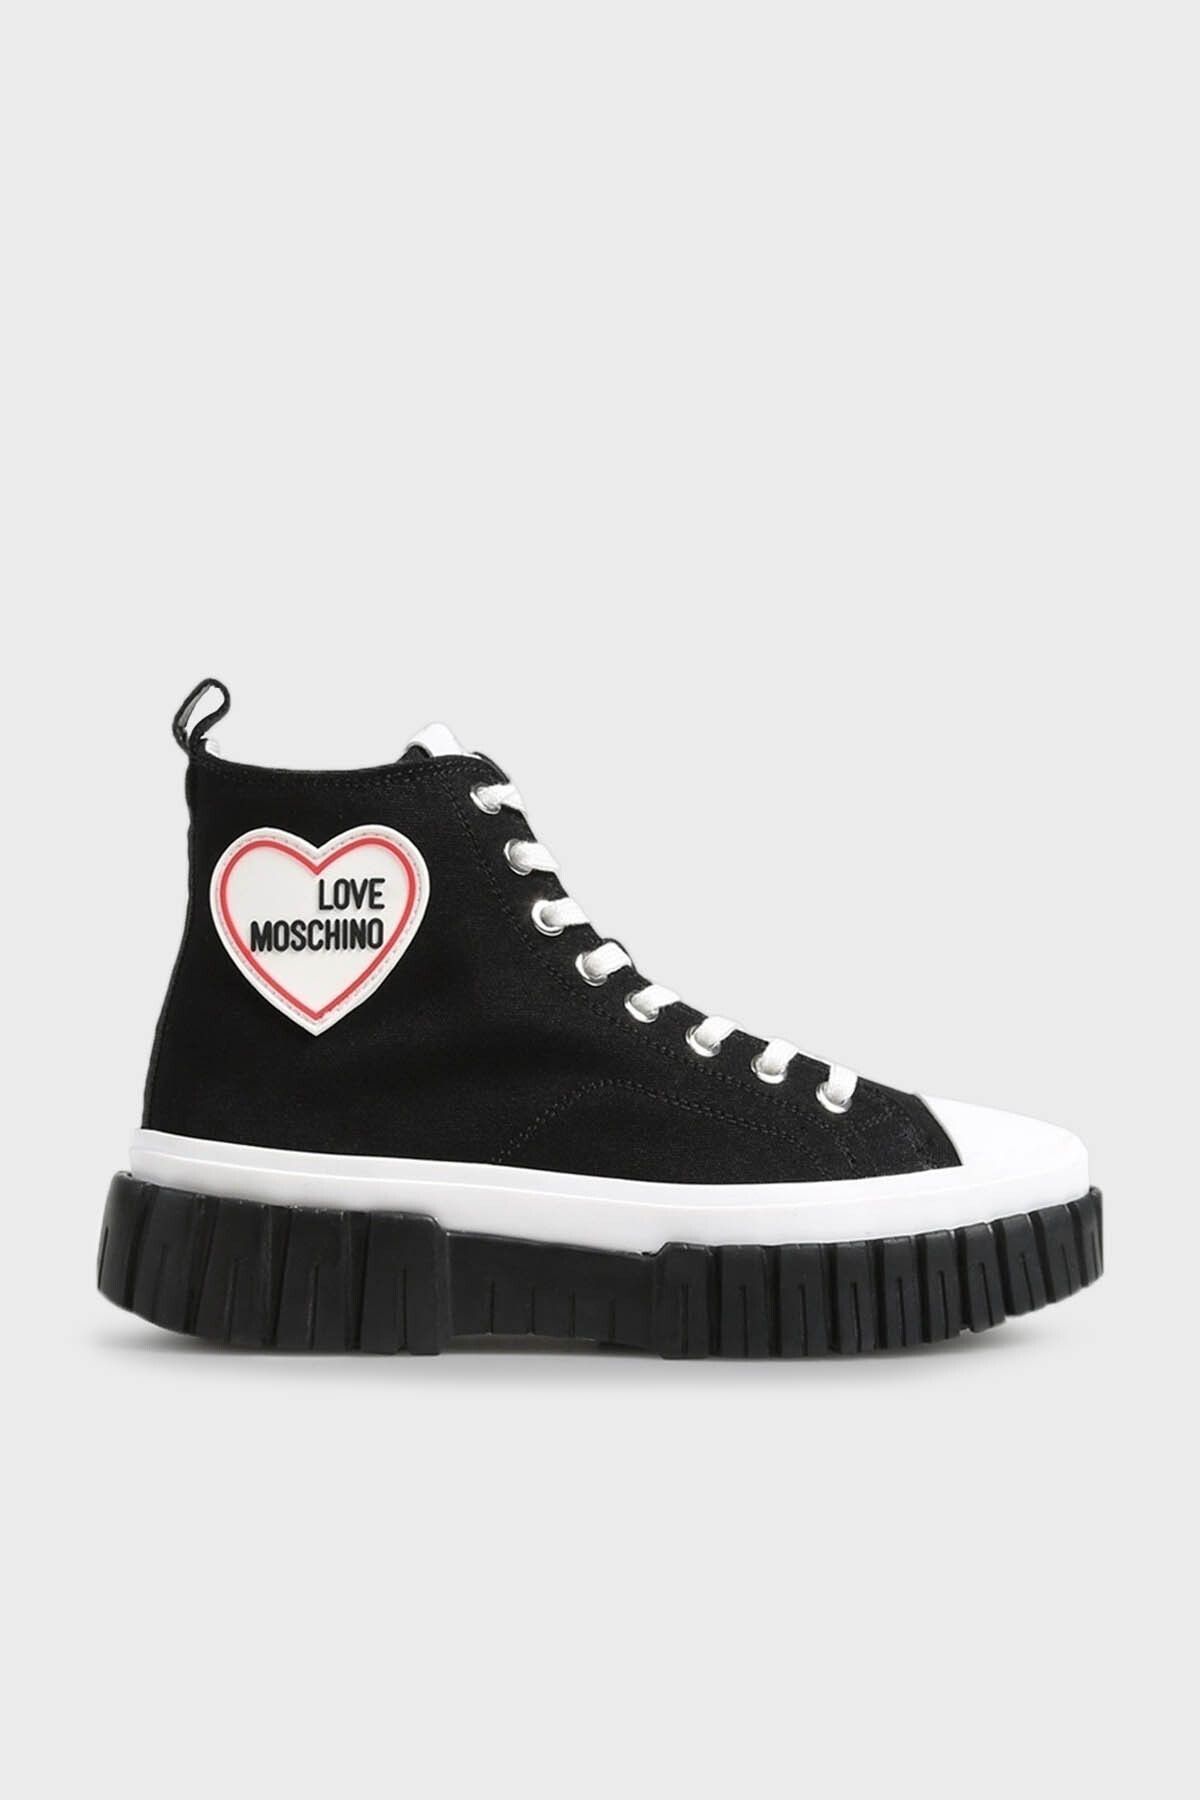 Moschino Logolu Bilekli Sneaker Ayakkabı AYAKKABI JA15595G1GJH0000